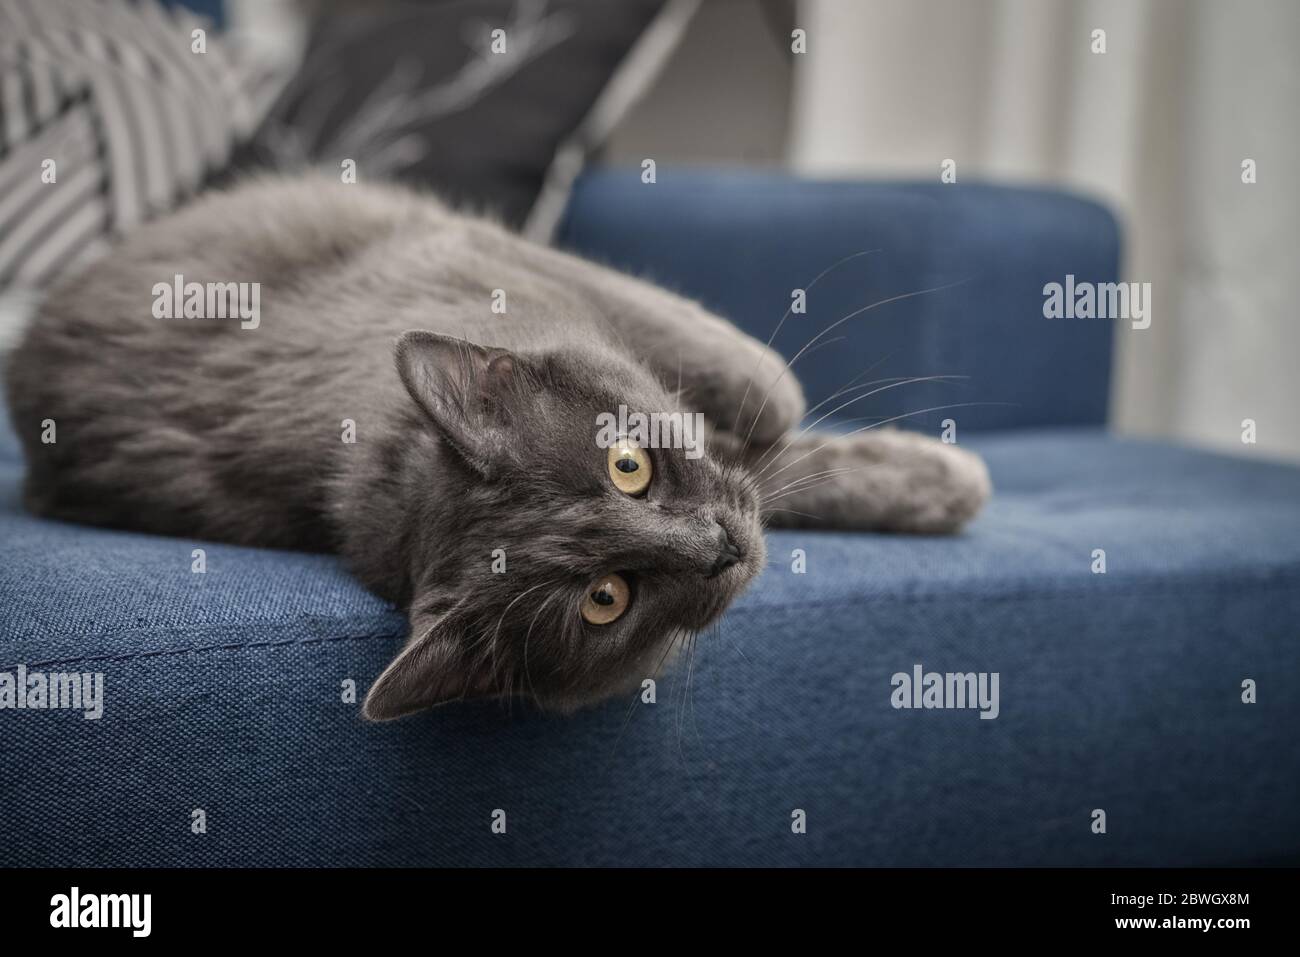 Gatto grigio Nebelung gatto è sdraiato sul divano a casa. Nebelung-una razza rara, simile al blu russo, tranne per la lunghezza media, con capelli setosi. Foto Stock